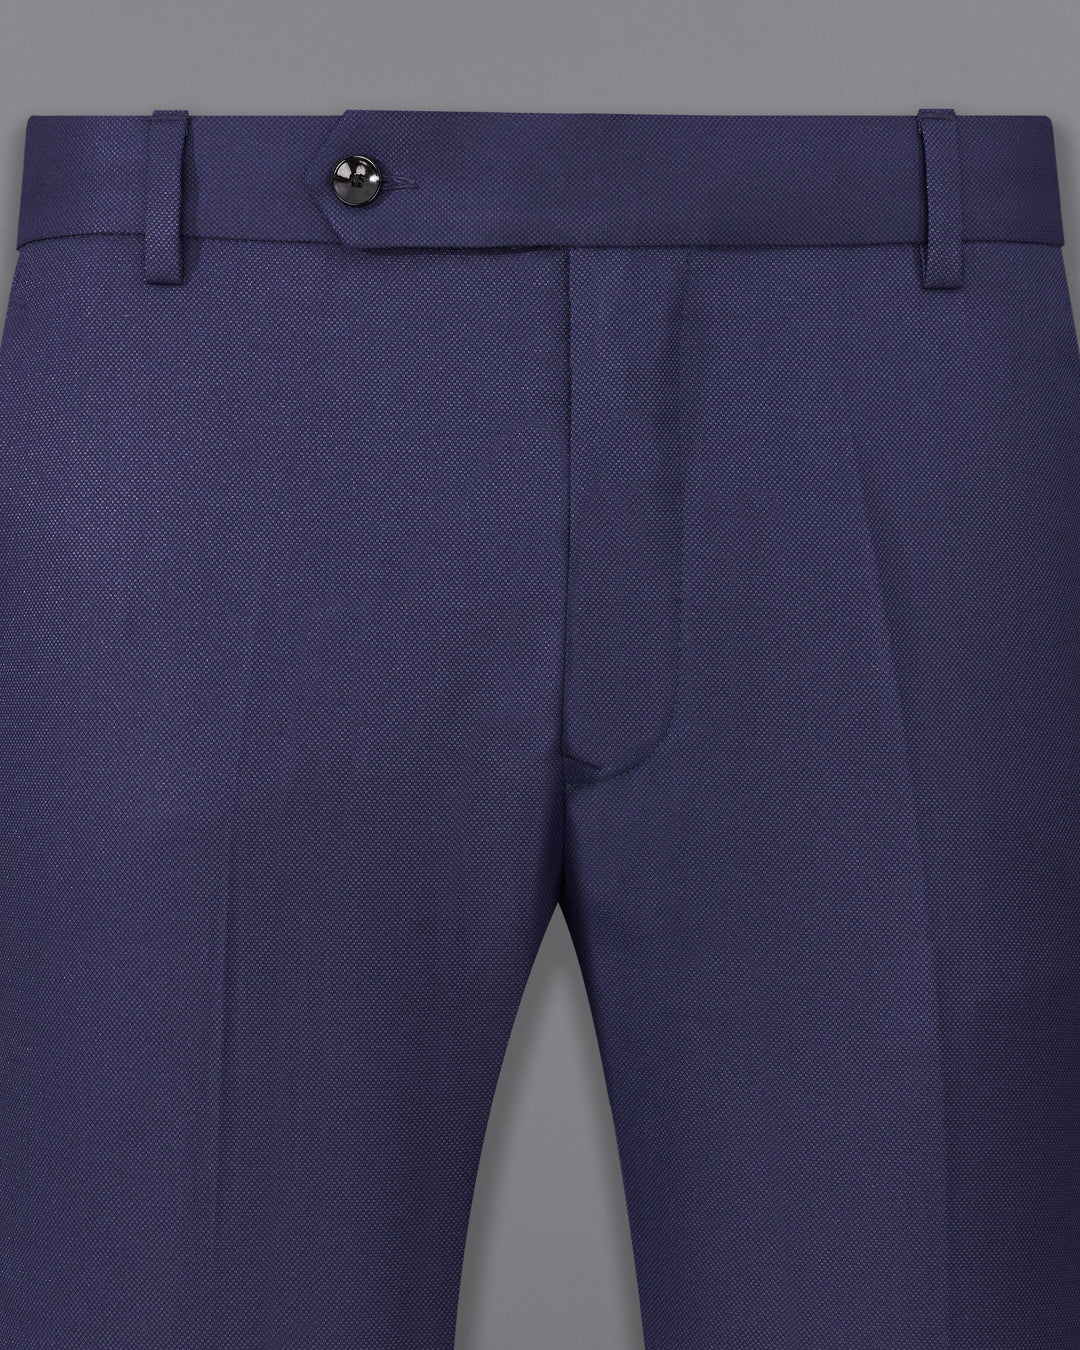 Harrogate Blue Pants | Mens blue dress pants, Black pants men, Pants outfit  men